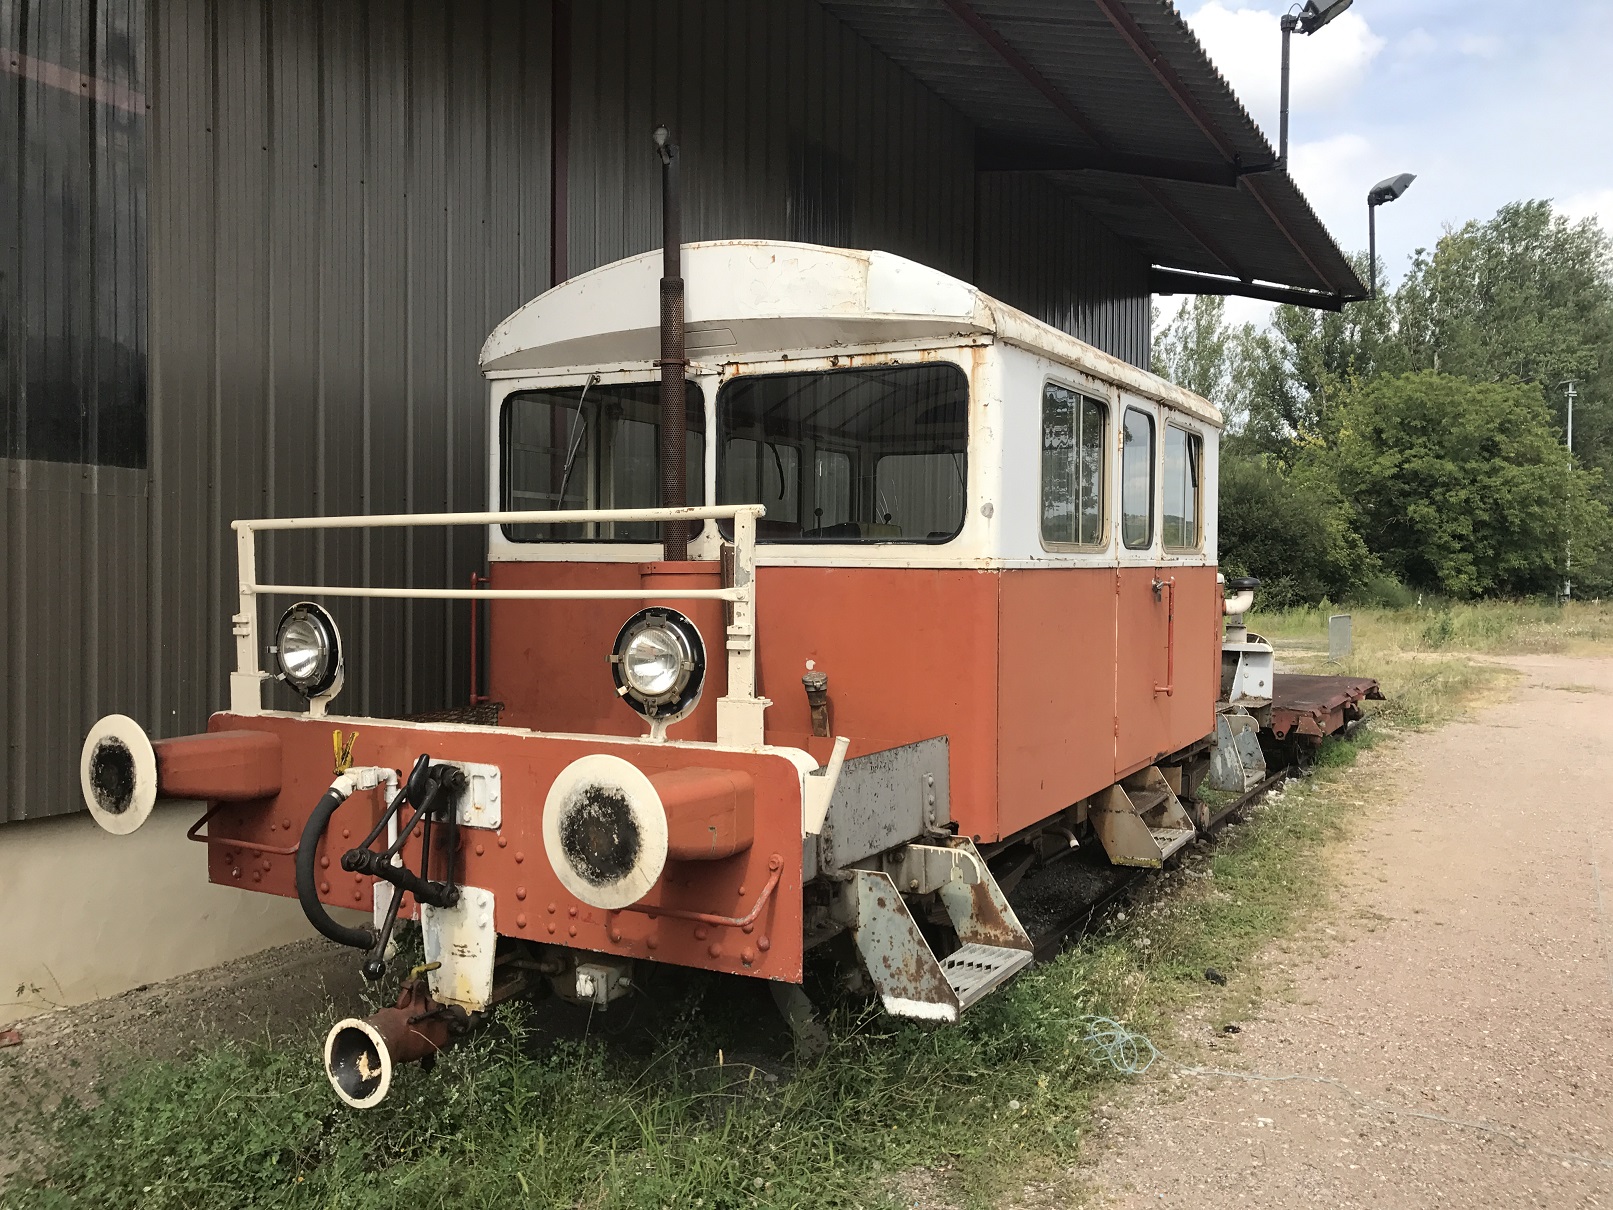 2017-08-16 - L'après-midi au musée ferroviaire de la gare de Cajarc (44).JPG